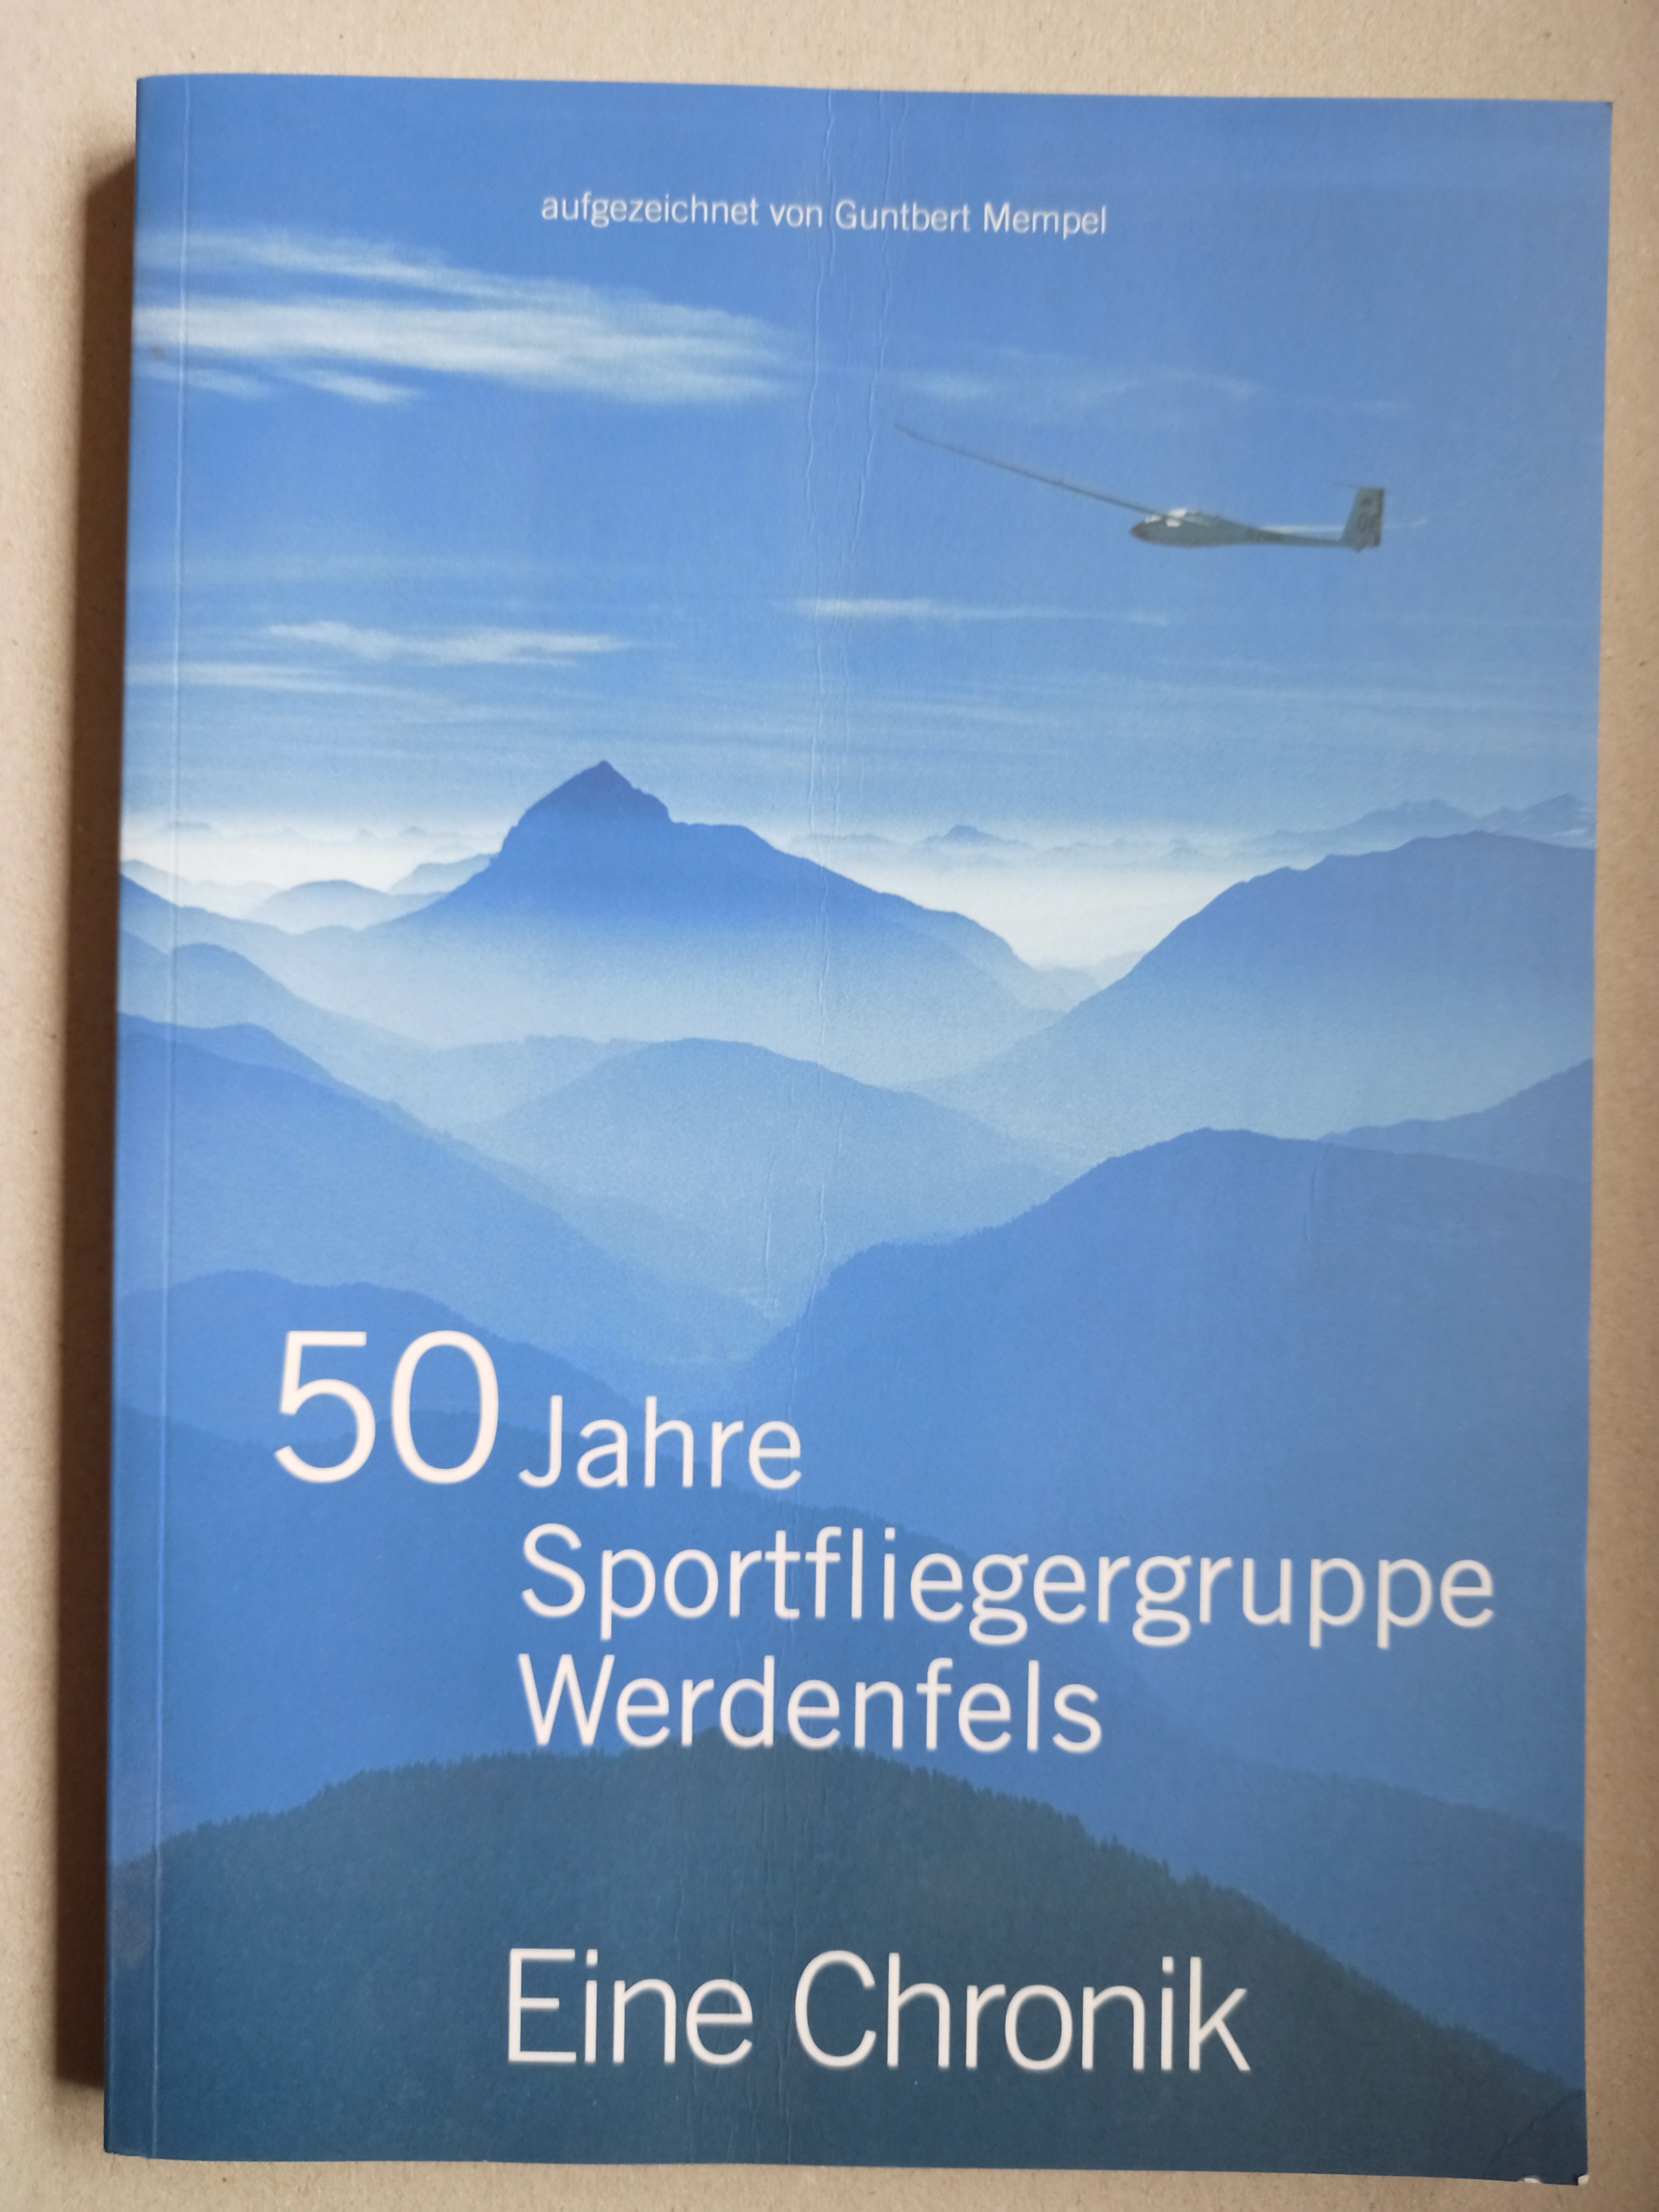 Werdenfels 50 Jahre (Deutsches Segelflugmuseum mit Modellflug CC BY-NC-SA)